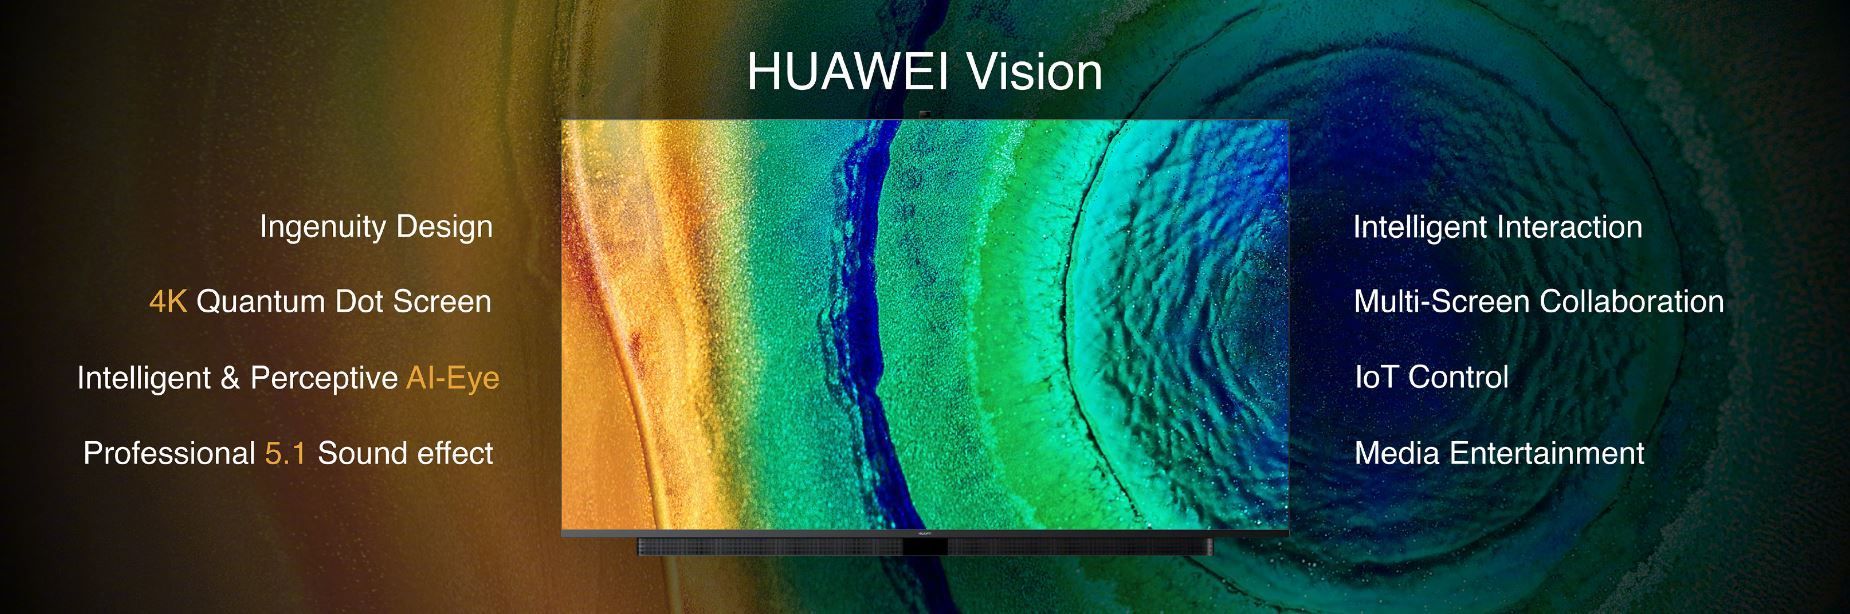 Официально представлен Huawei Vision, проверьте полную информацию здесь